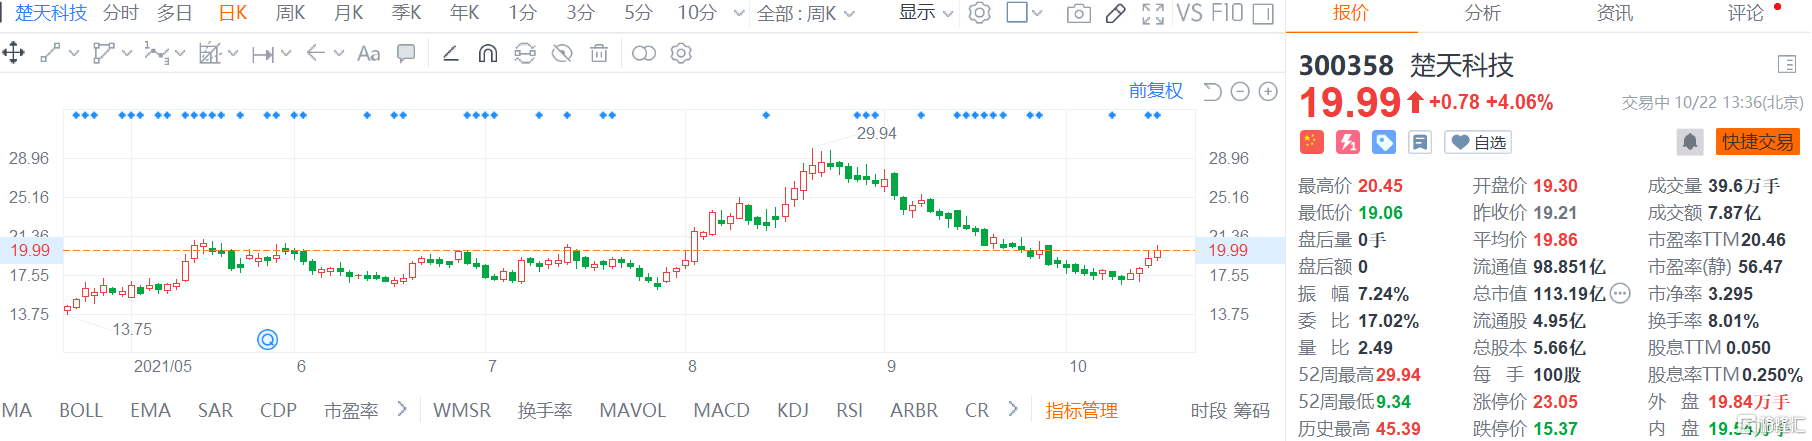 楚天科技(300358.SZ)股价继续回升现报19.99元 总市值113.2亿